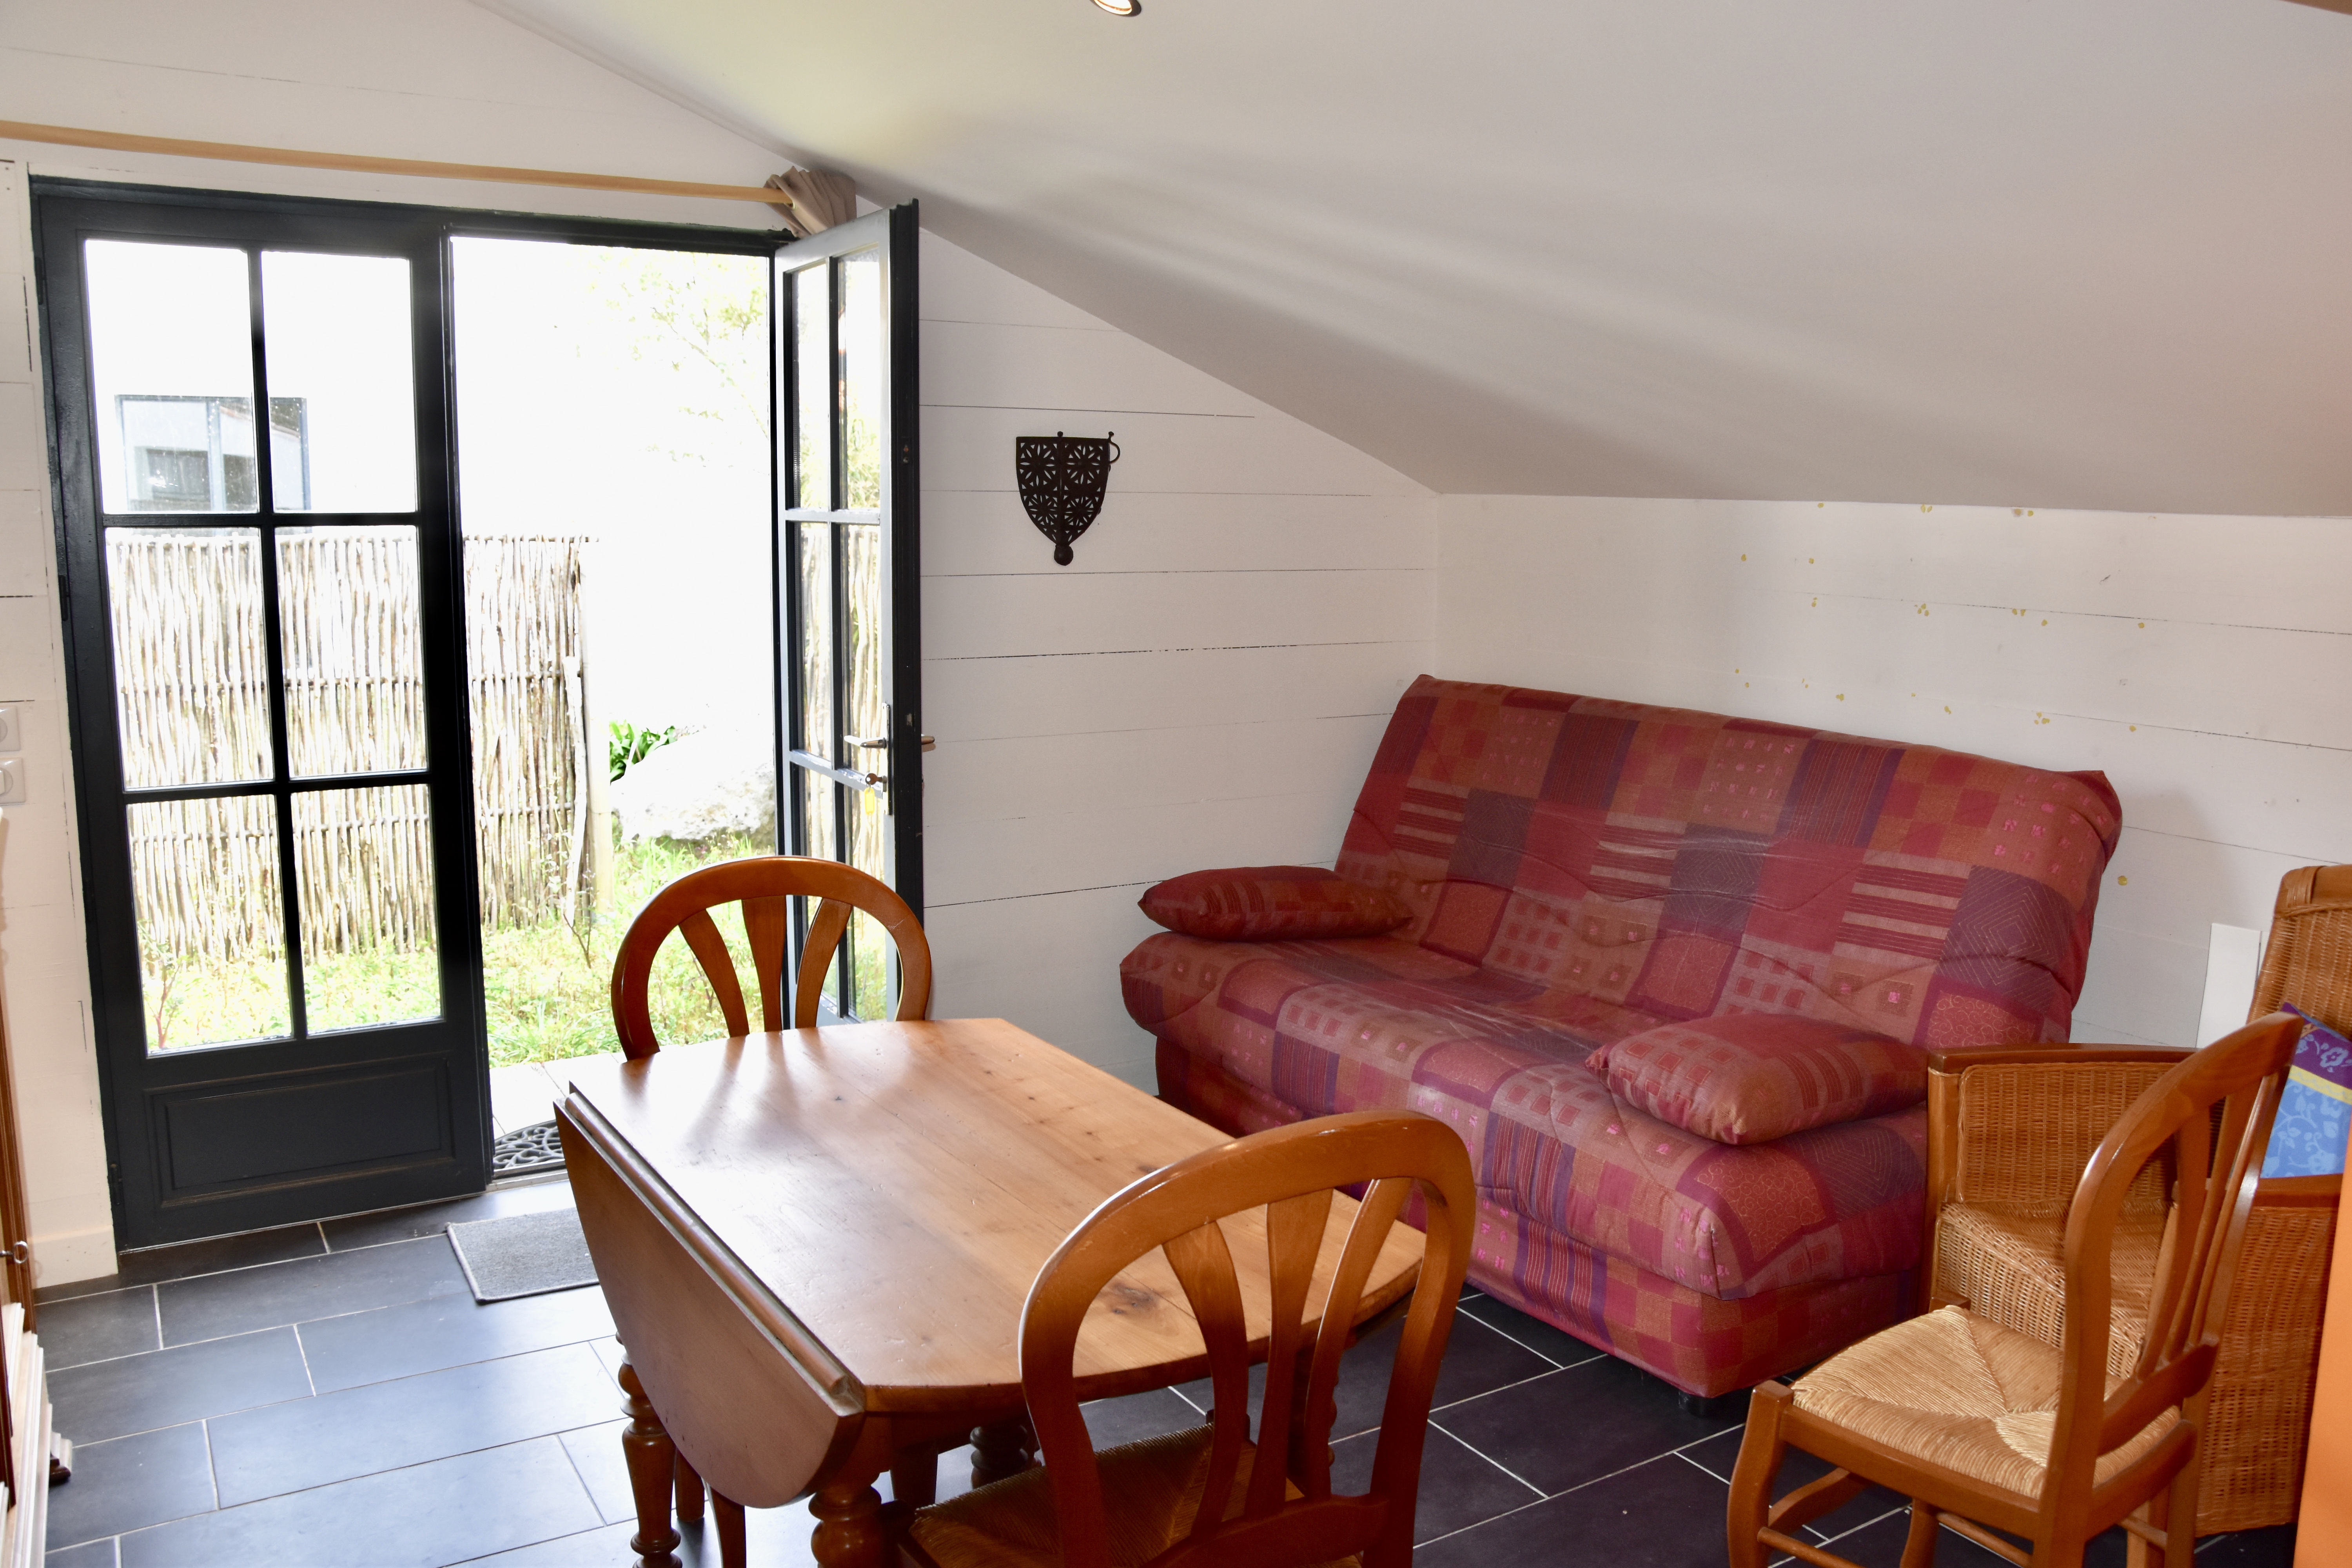 A vendre maison Noirmoutier en l'Ile 85330; 584 775 €